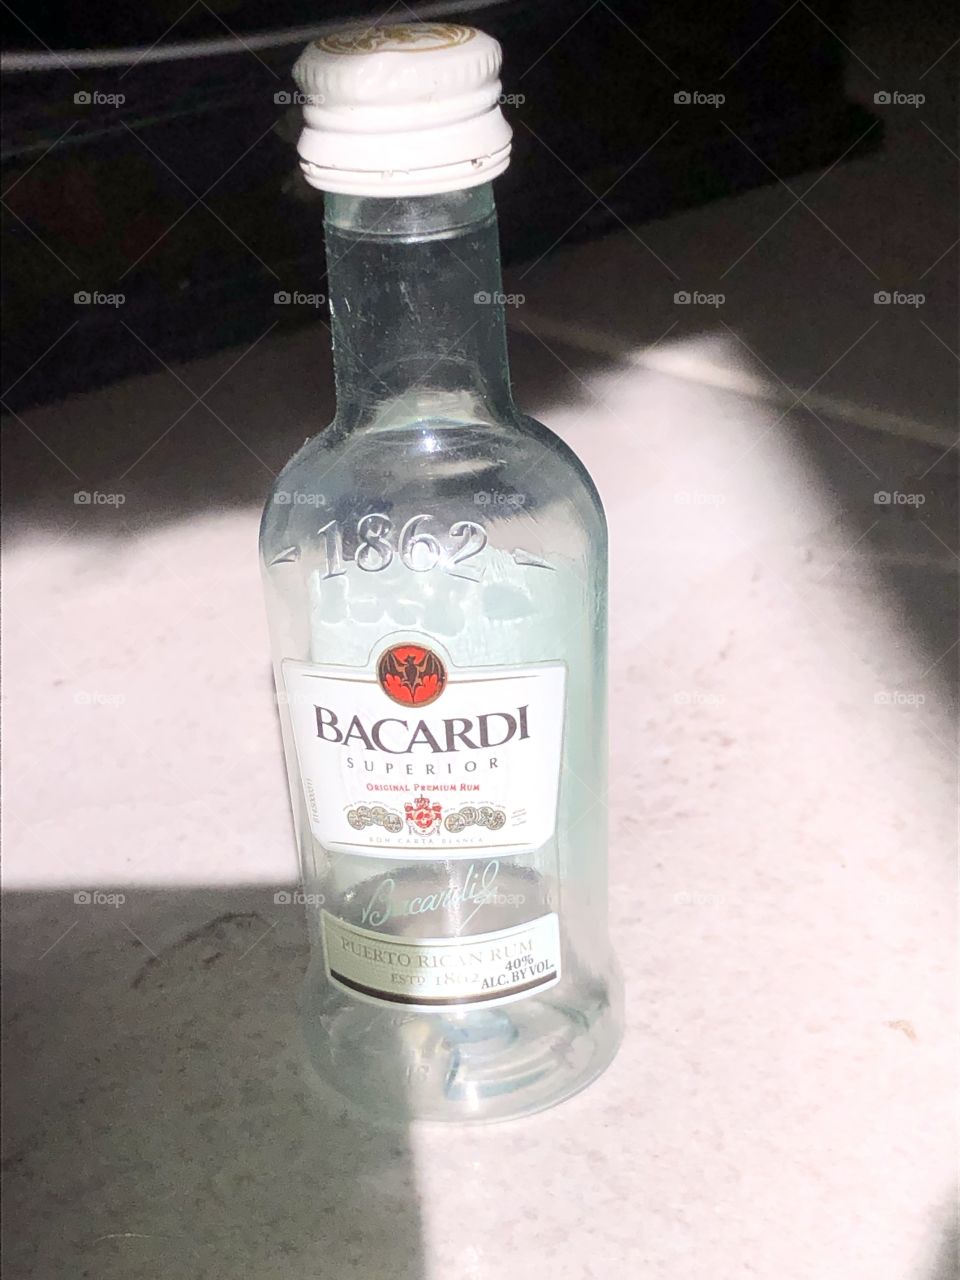 Bacardi bottle in the sun